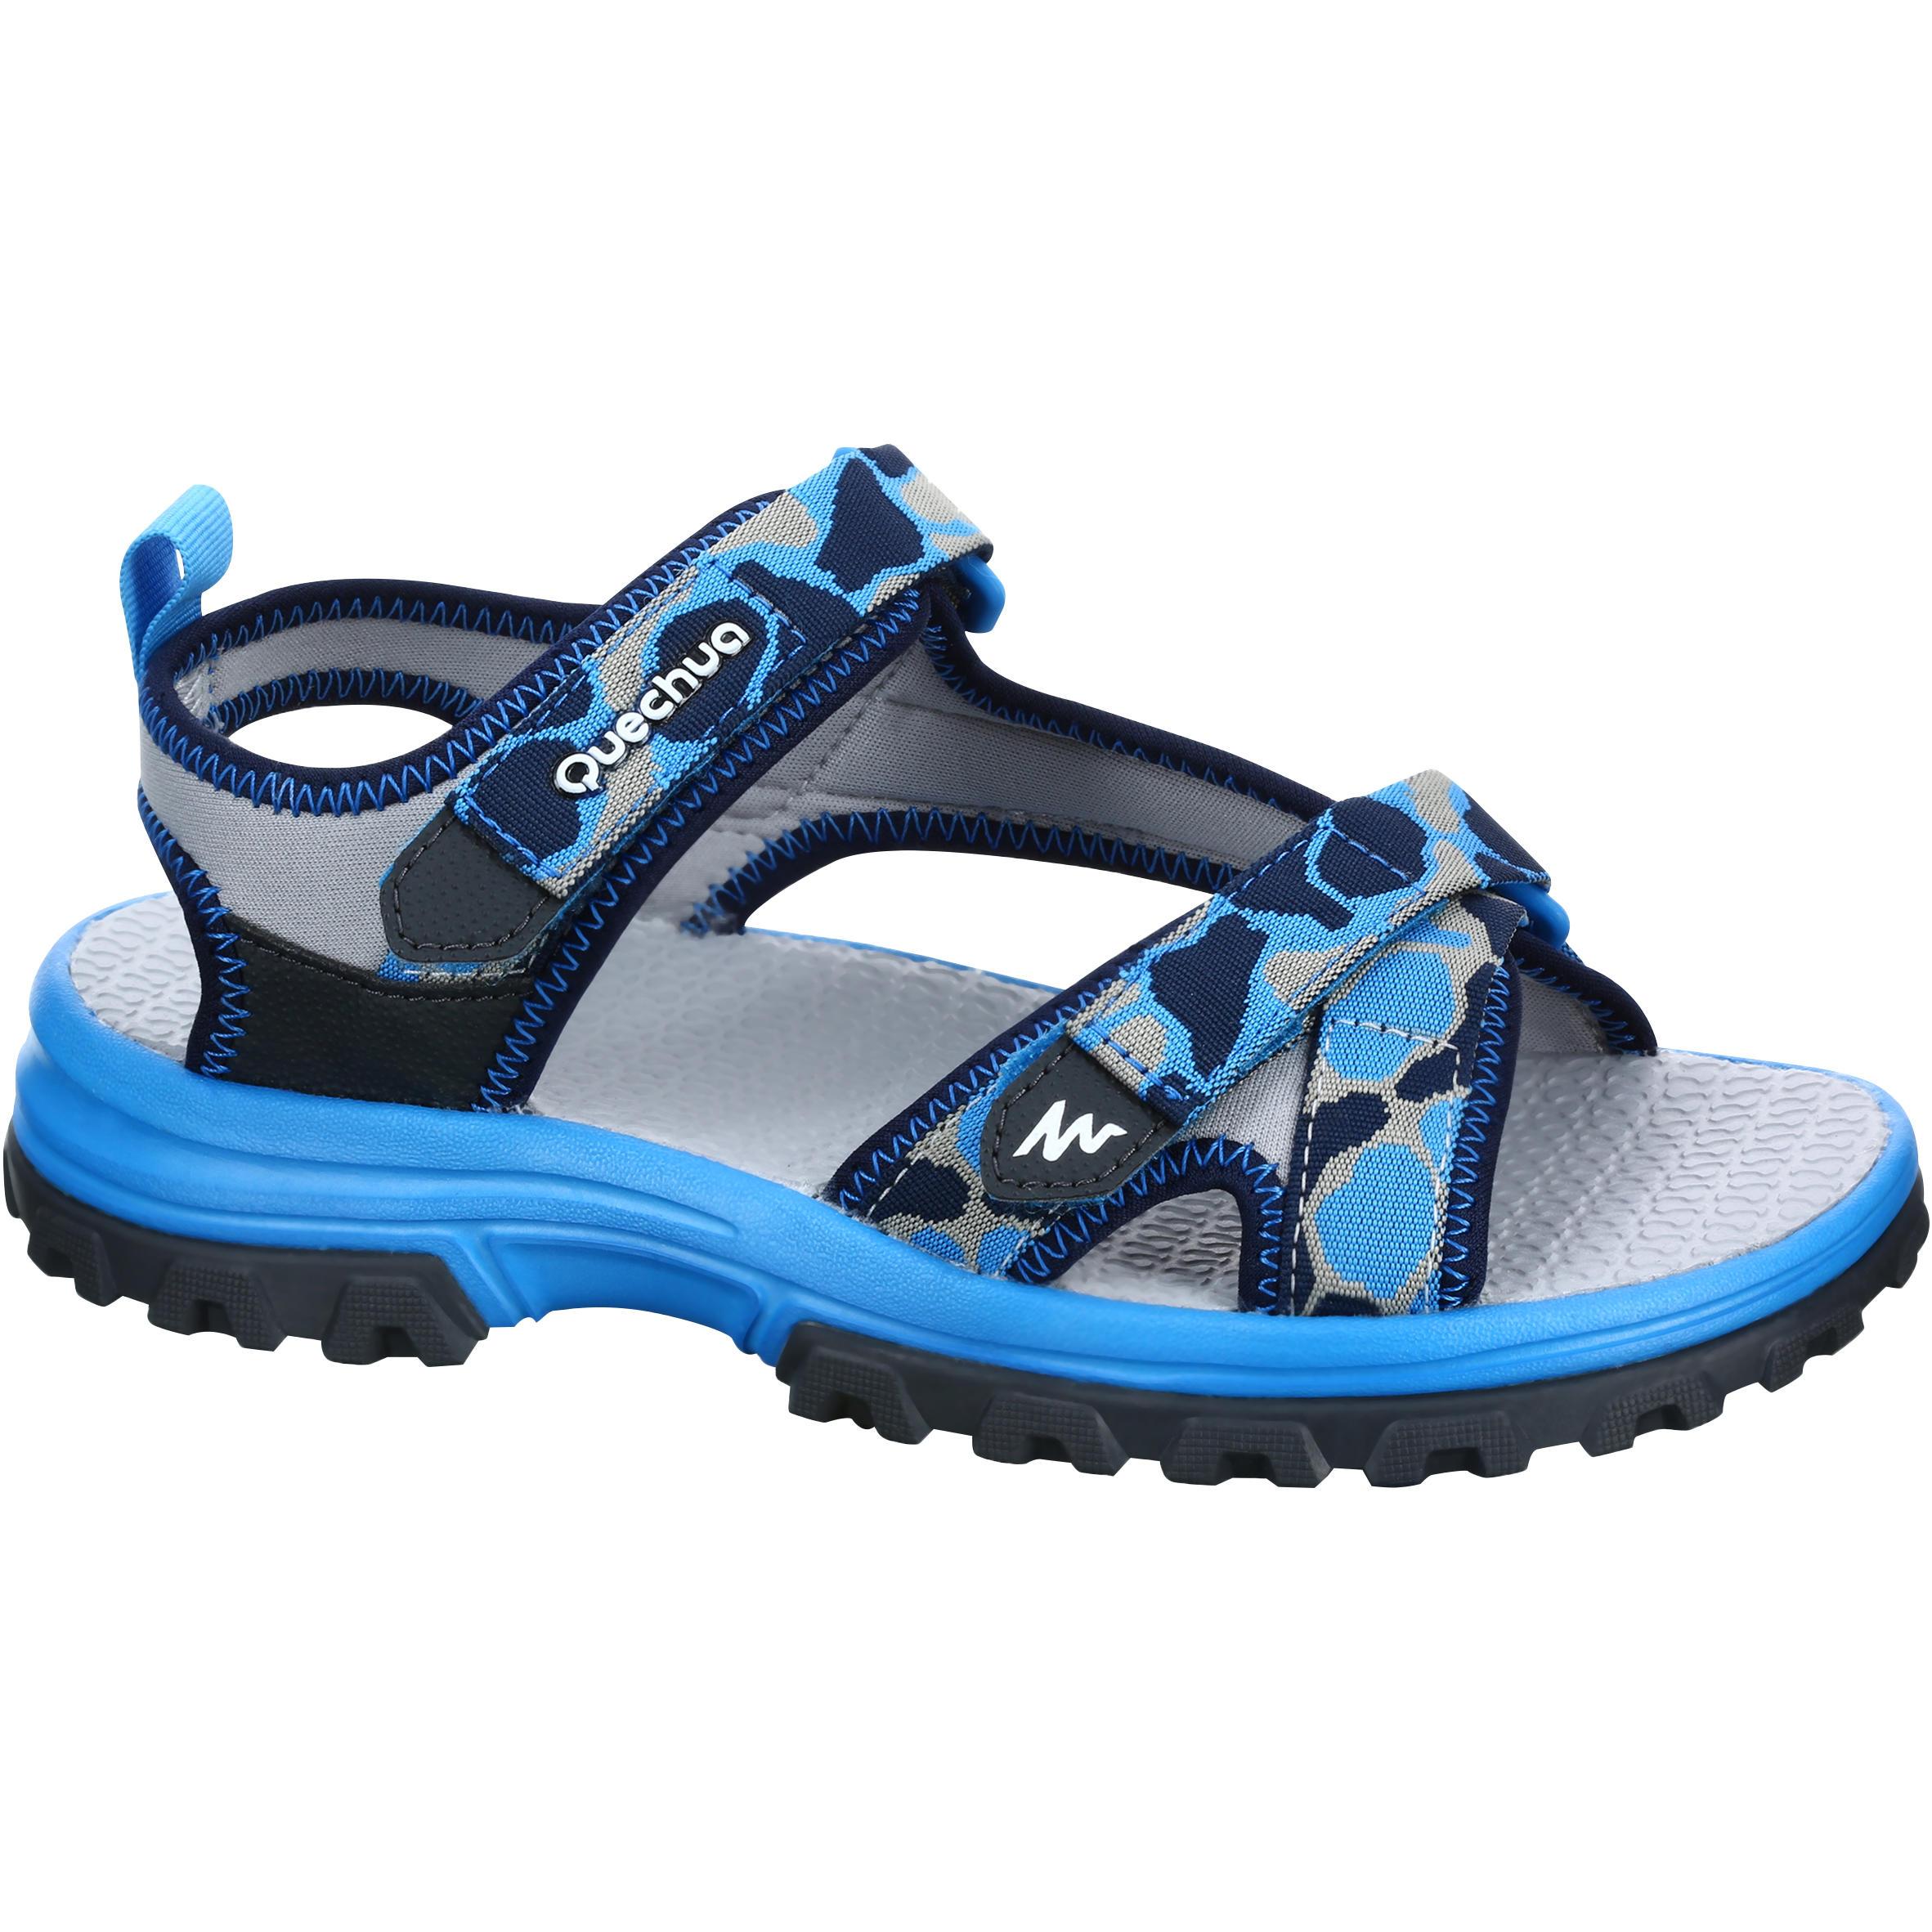 [ด่วน!! โปรโมชั่นมีจำนวนจำกัด] รองเท้าแตะเดินป่าสำหรับเด็กรุ่น ARPENAZ 100 (ลายพรางสีน้ำเงิน) สำหรับ เดินป่า